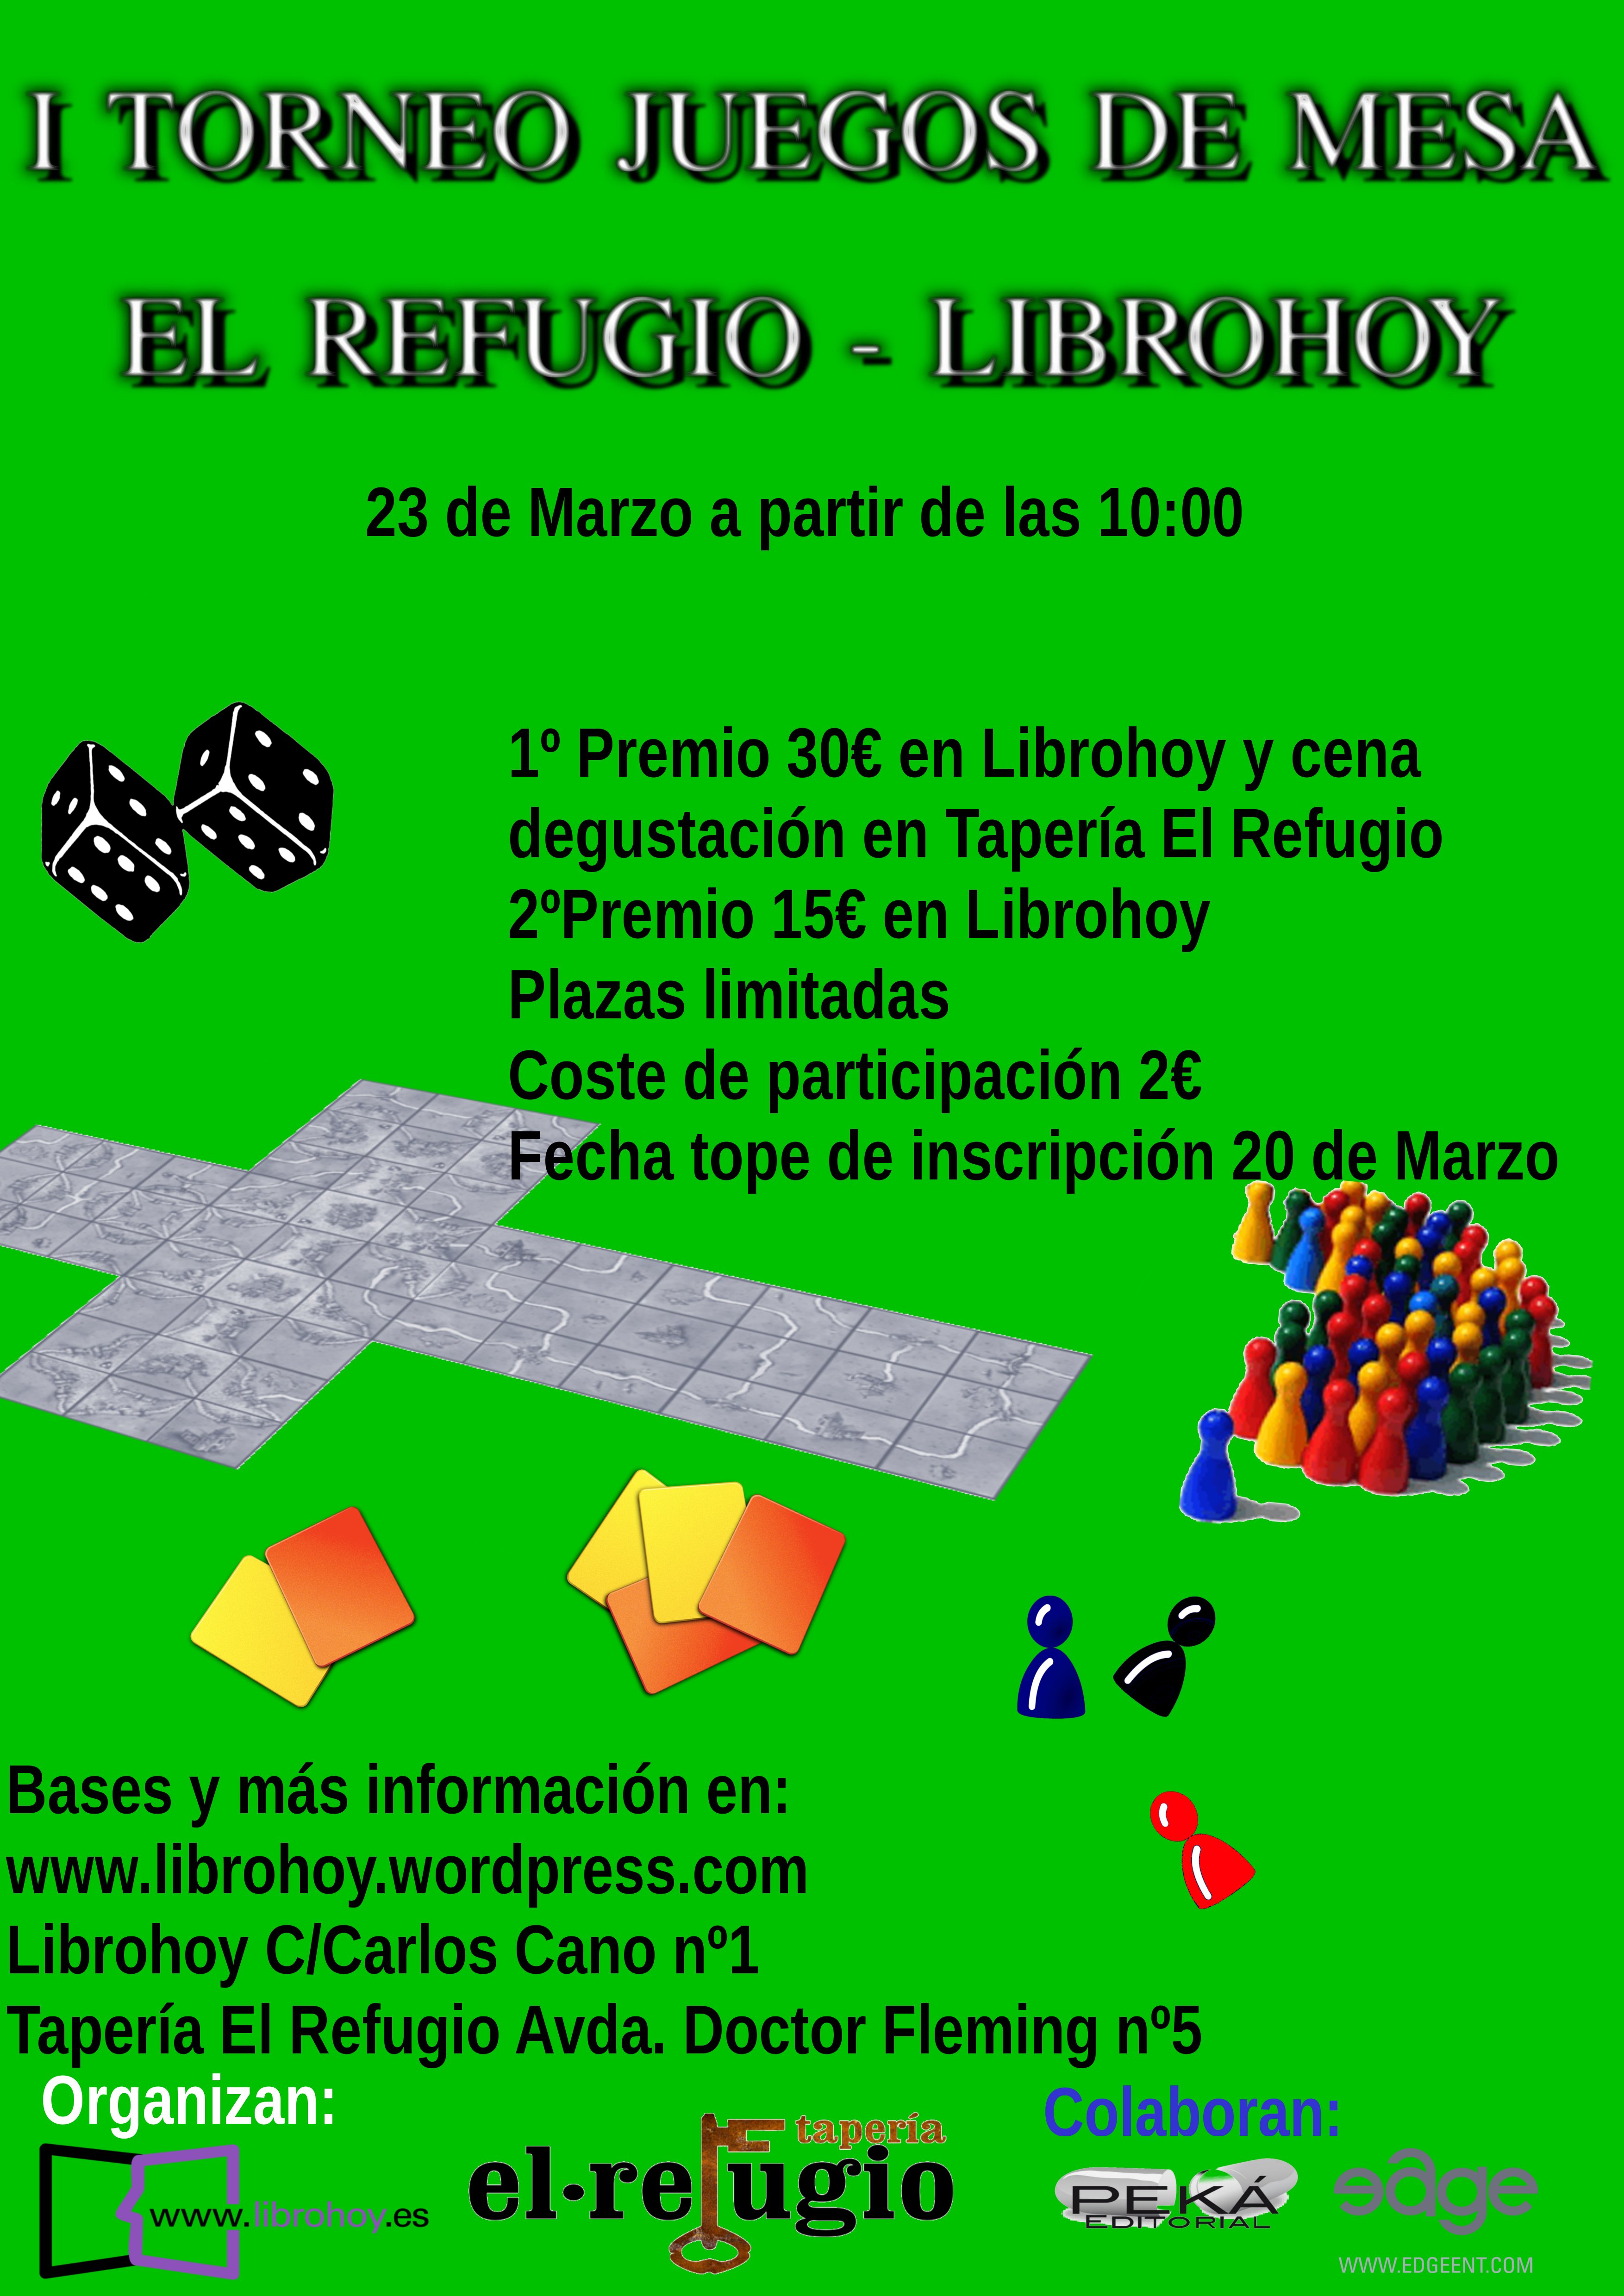 1er Torneo de juegos de mesa El Refugio-Librohoy - Córdoba